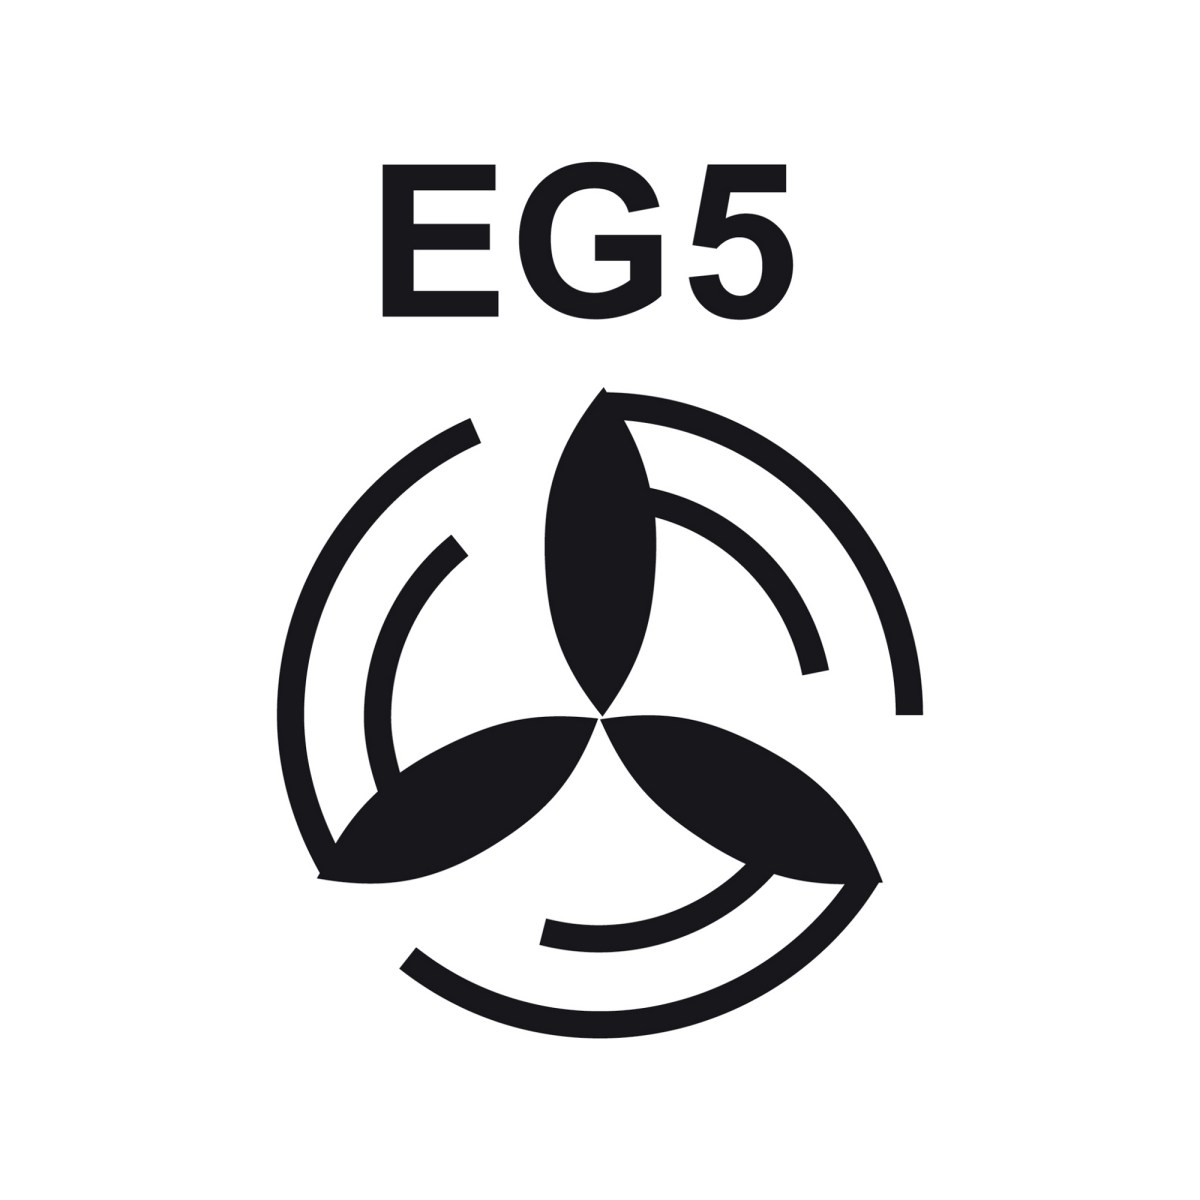 Eg5